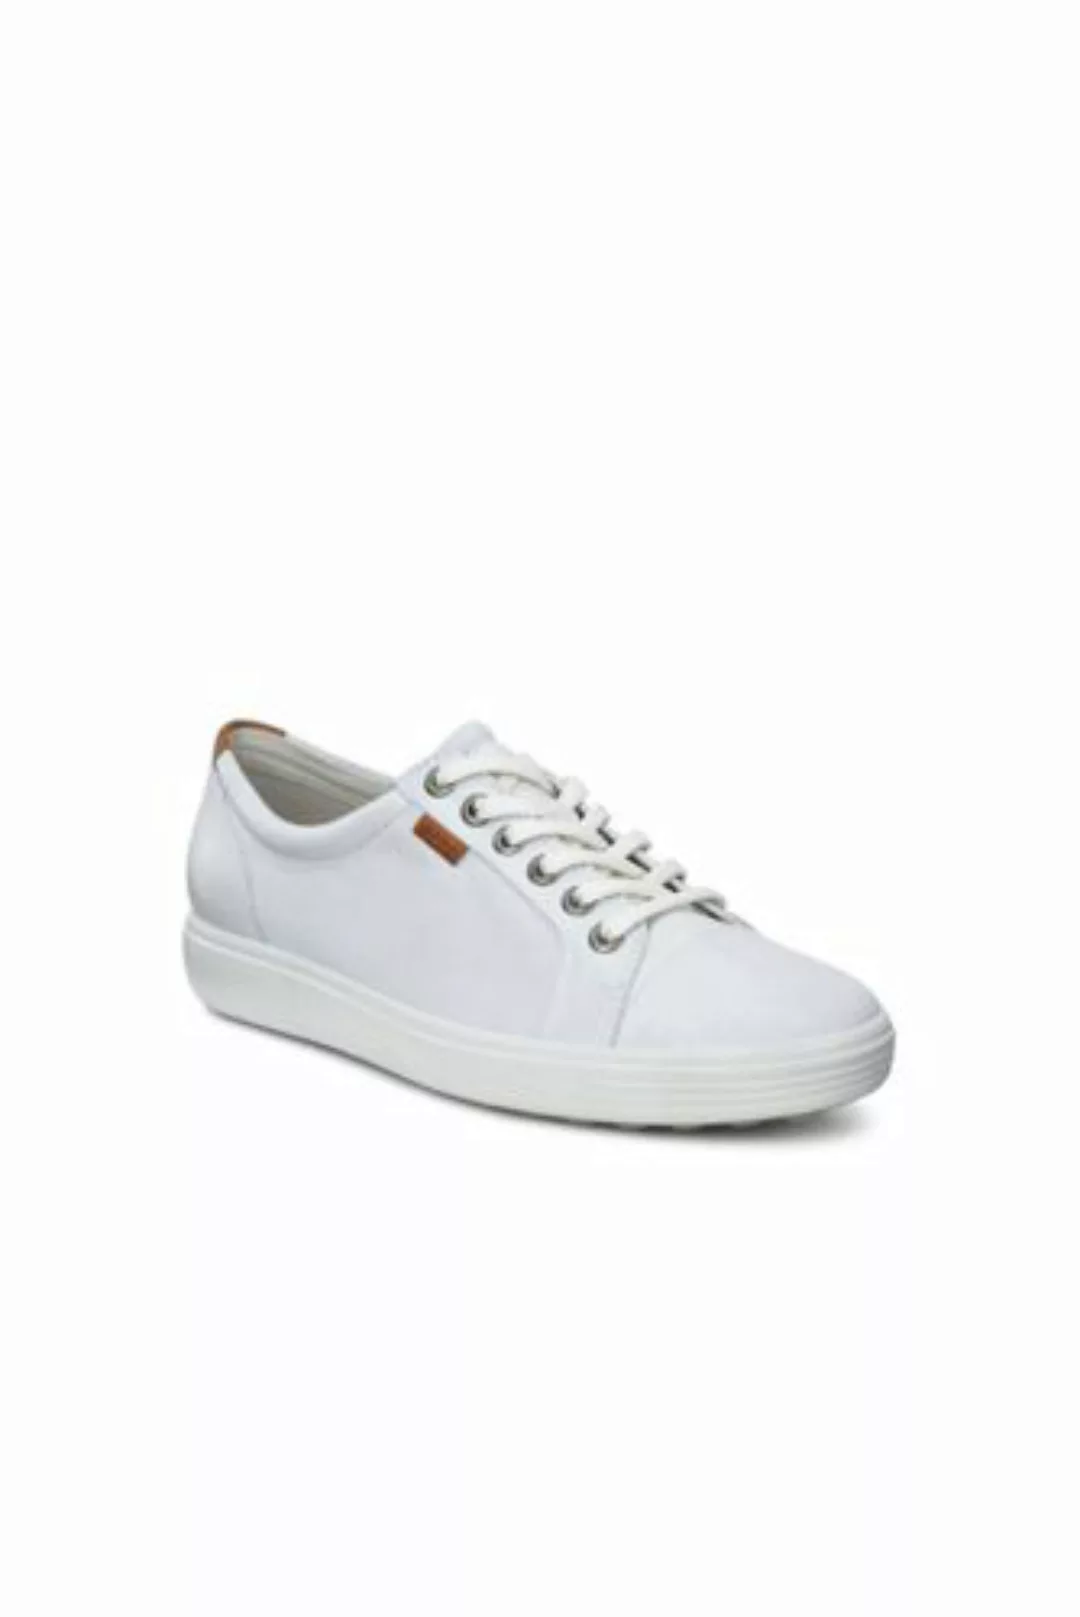 ECCO Sneaker SOFT 7, Damen, Größe: 37 Normal, Weiß, Leder, by Lands' End, W günstig online kaufen